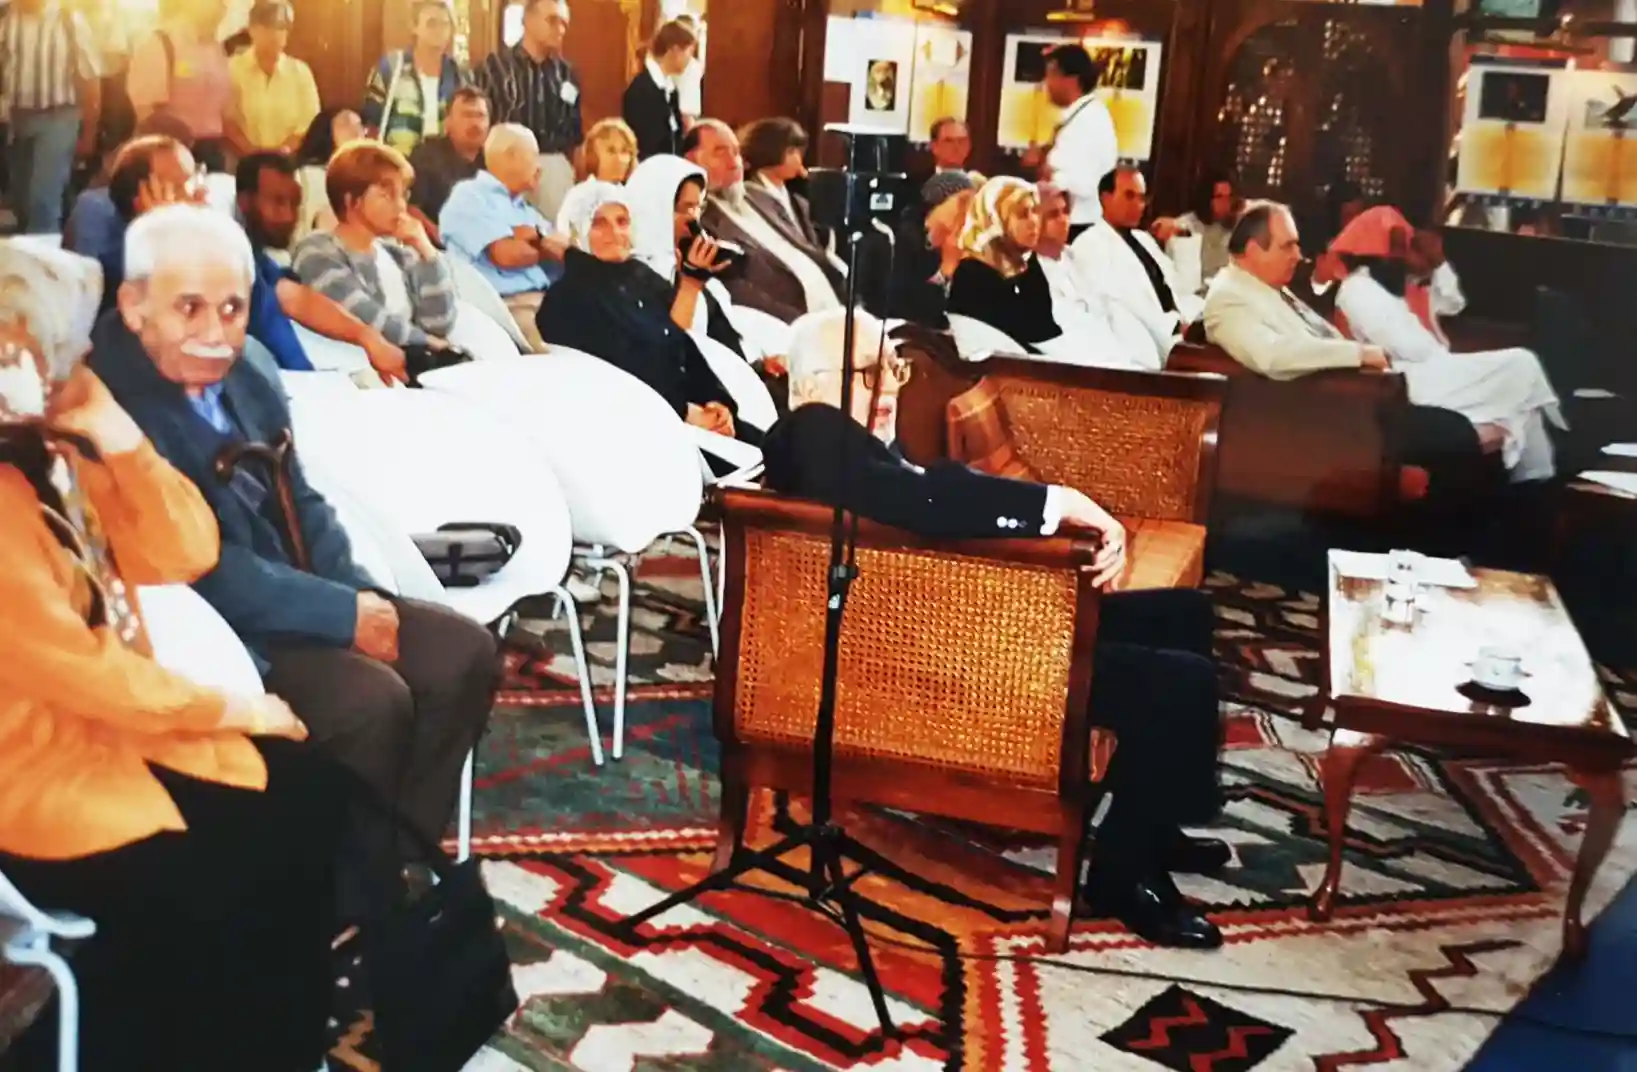 Abbildung-von-Besuchern-des-islampavillons-bei-der-expo-2000-in-hannover-IISW